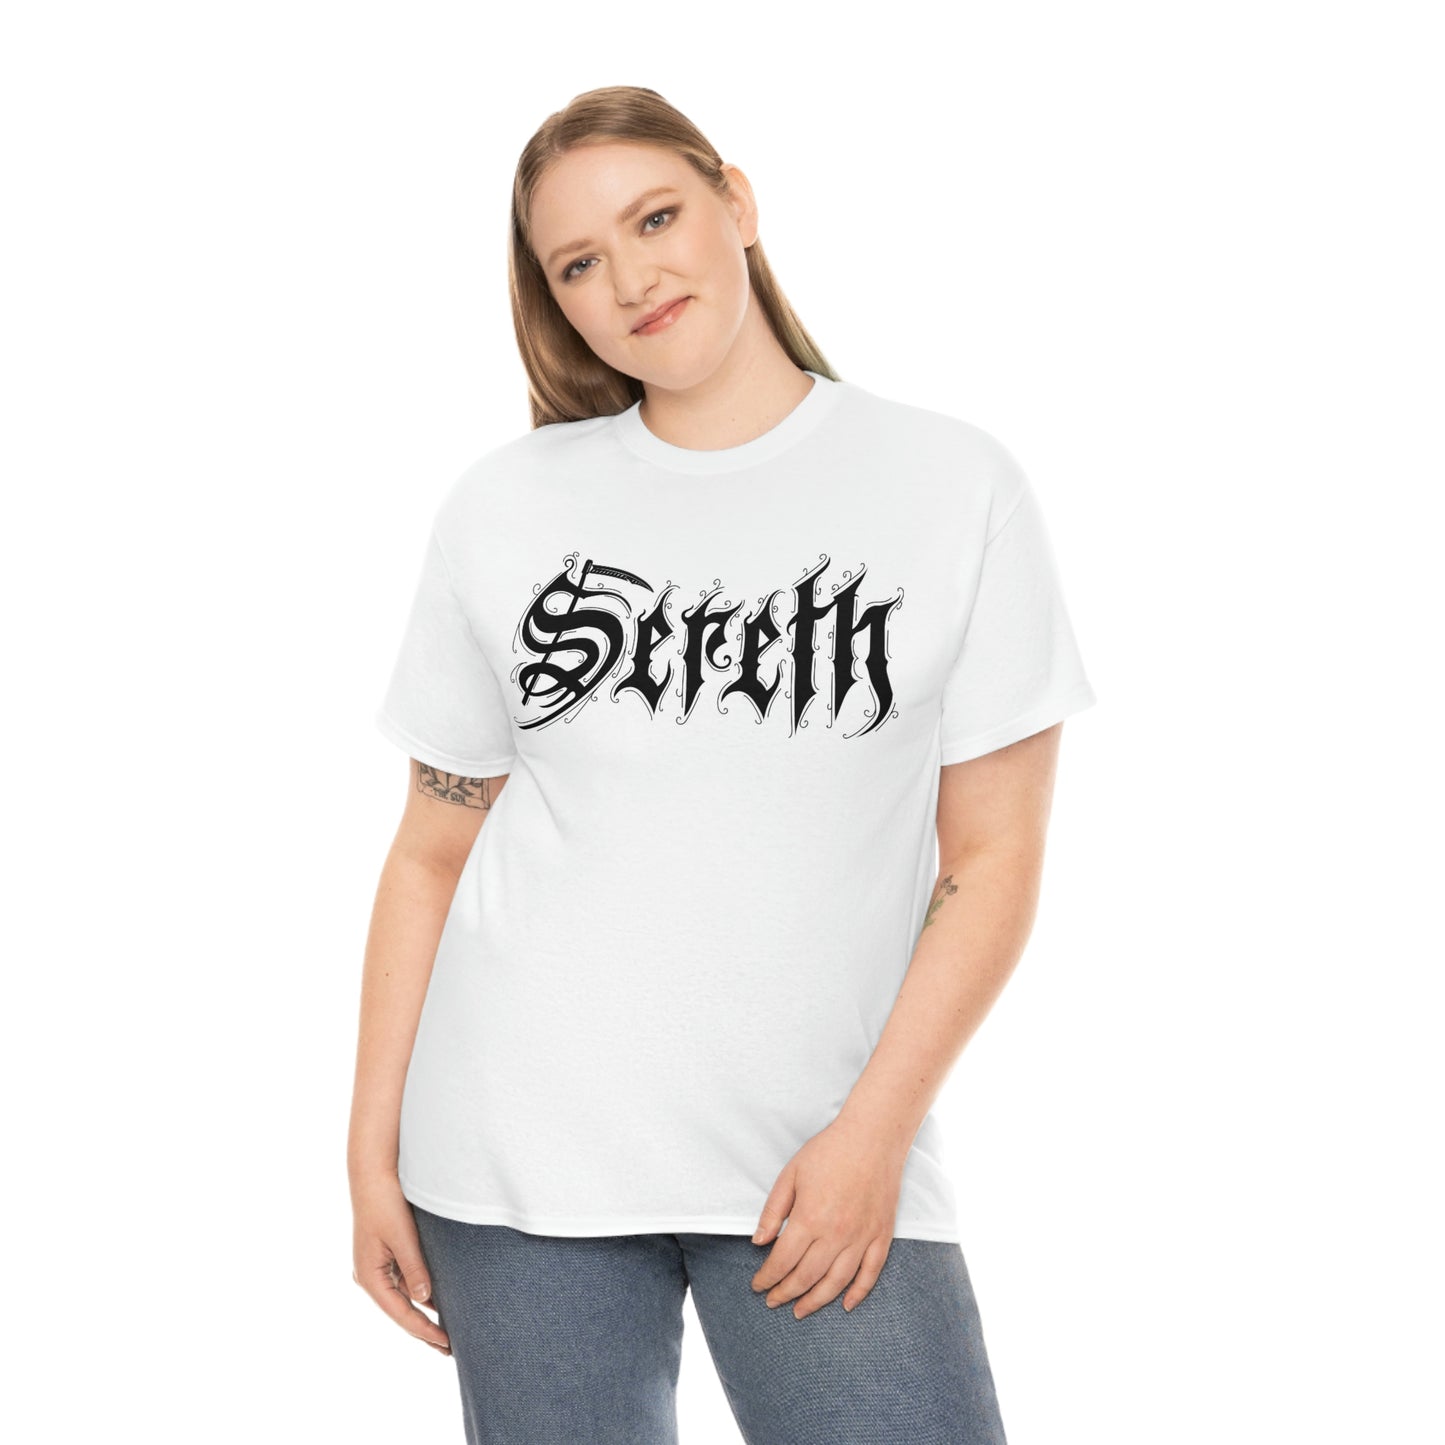 Sereth - Logo w/design